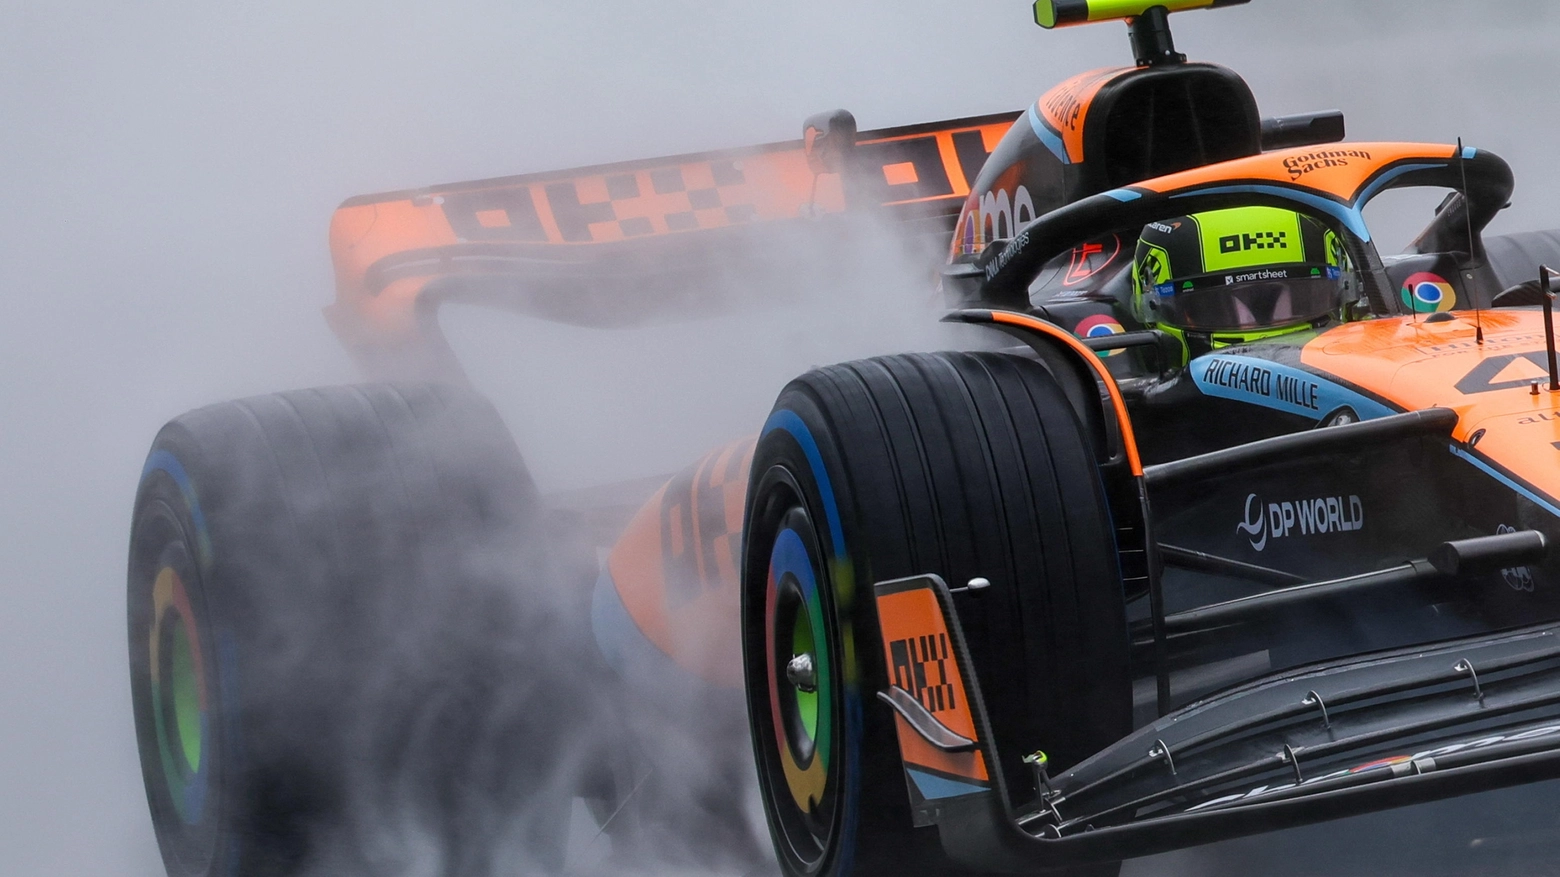 Il pilota inglese della McLaren felice per un fine settimana affrontato con l'assetto sbagliato: "In rettilineo ci superavano tutti"